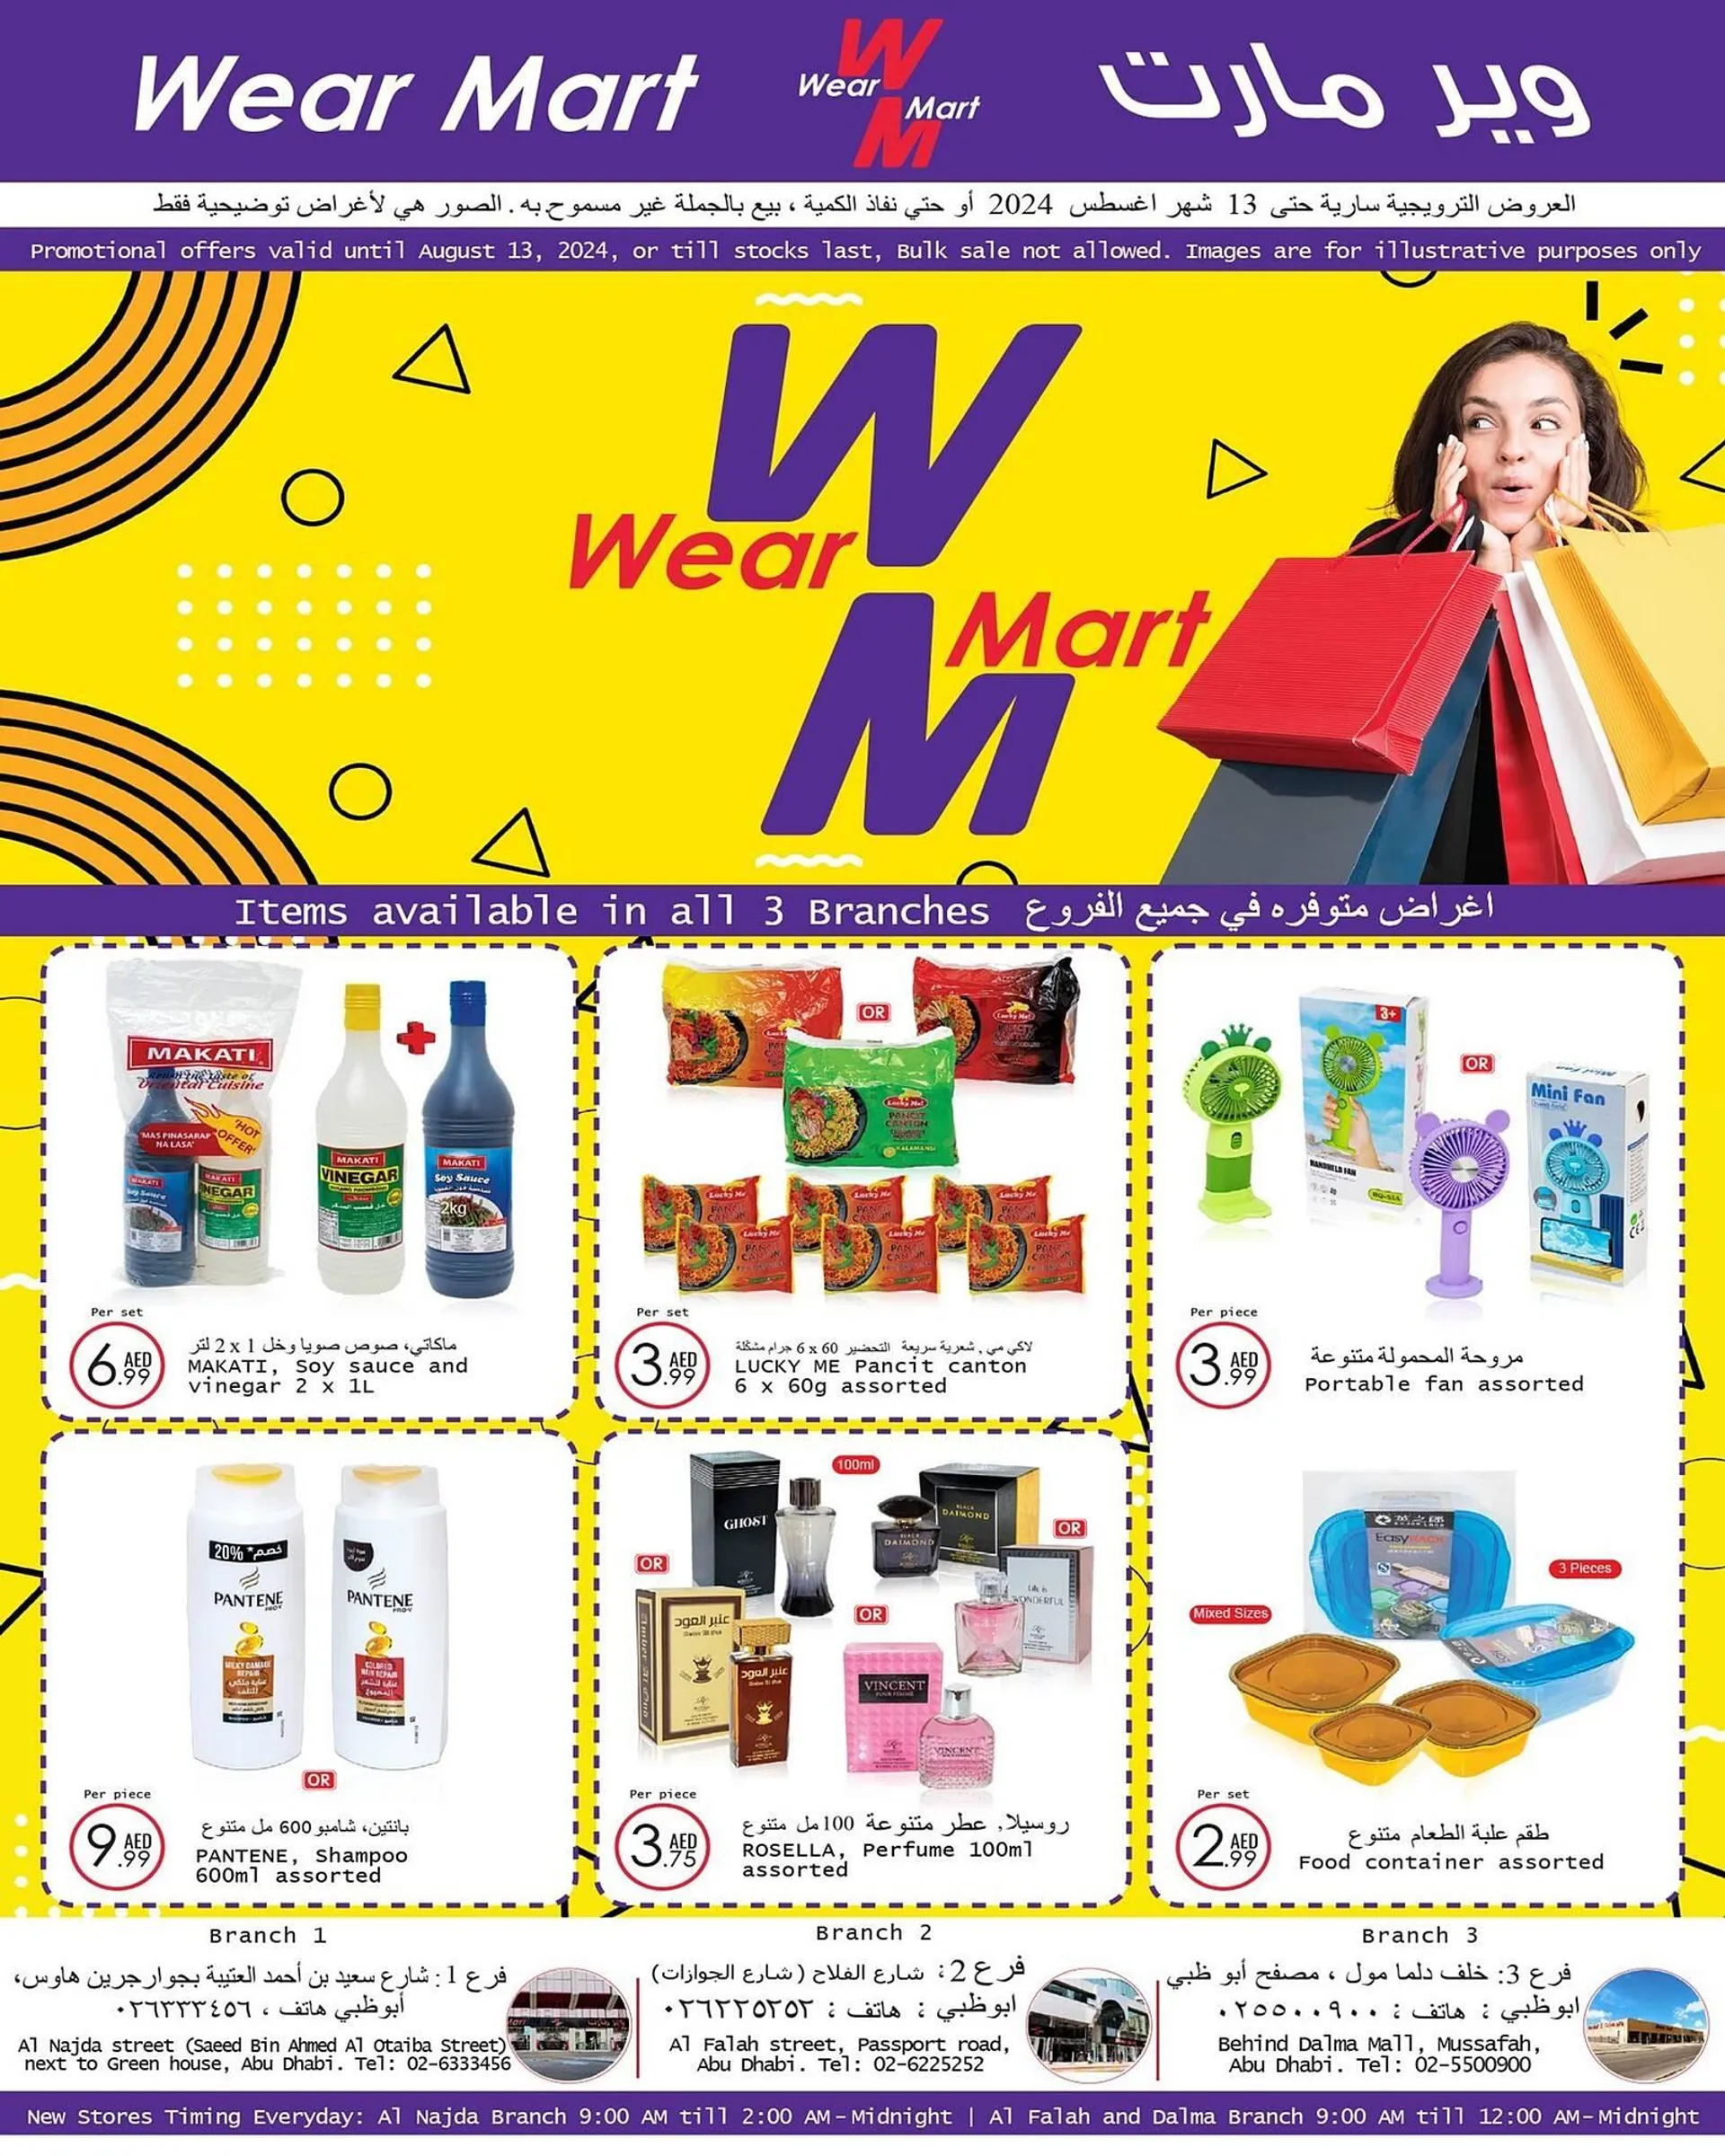 Wear Mart catalogue - 1